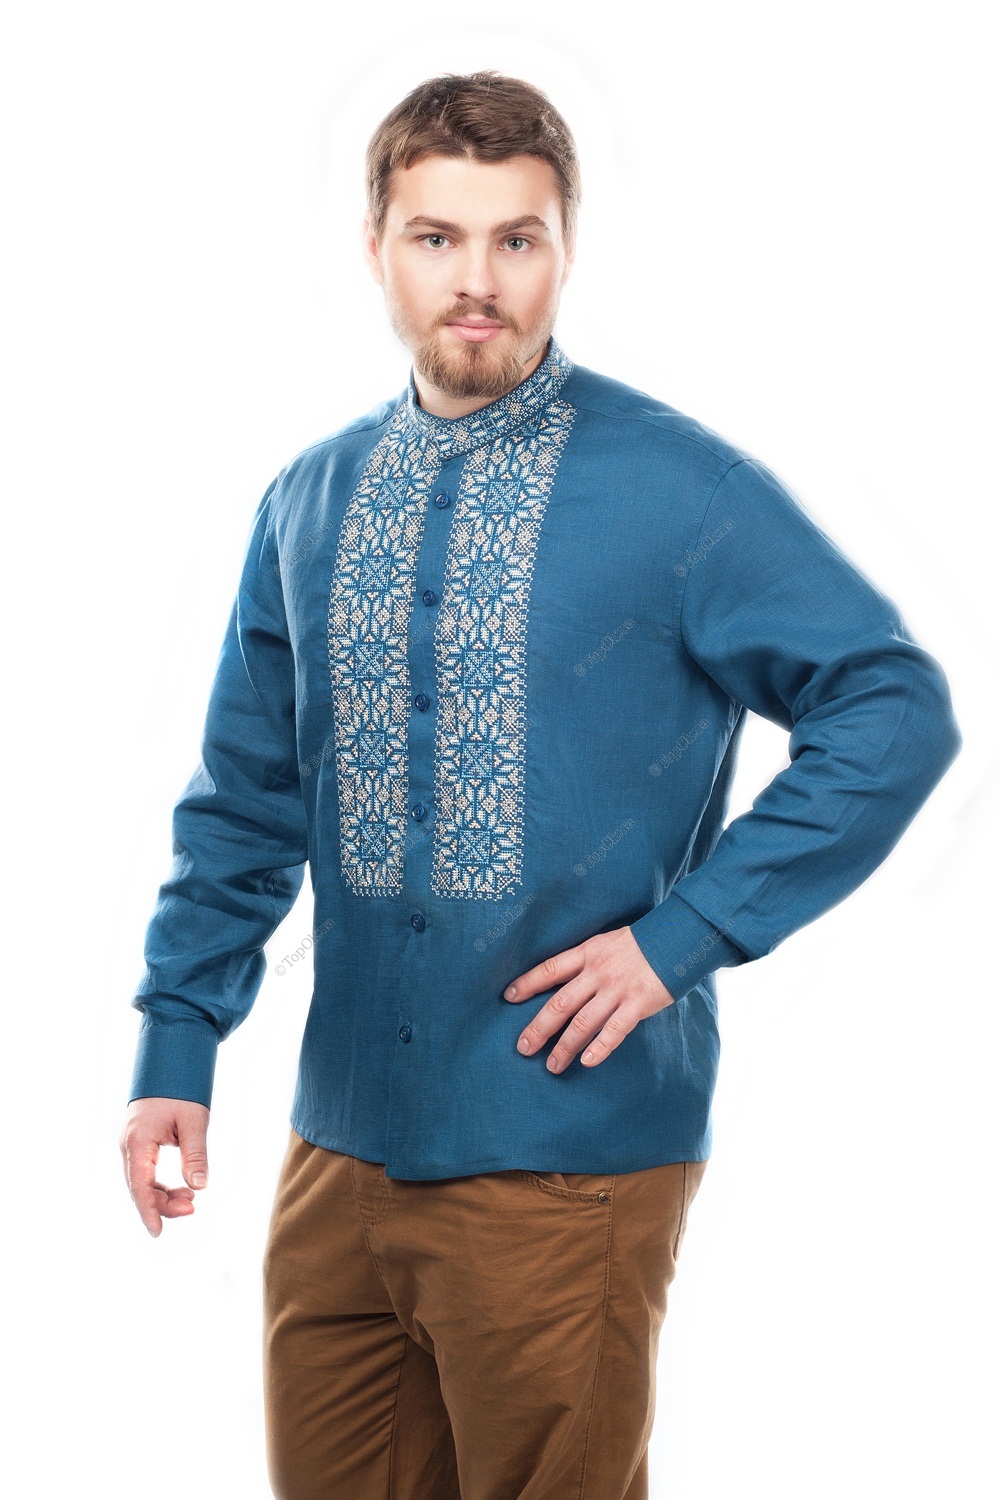 Купить Рубашка мужская СЛОБОЖАНКА (Slobozhanka)